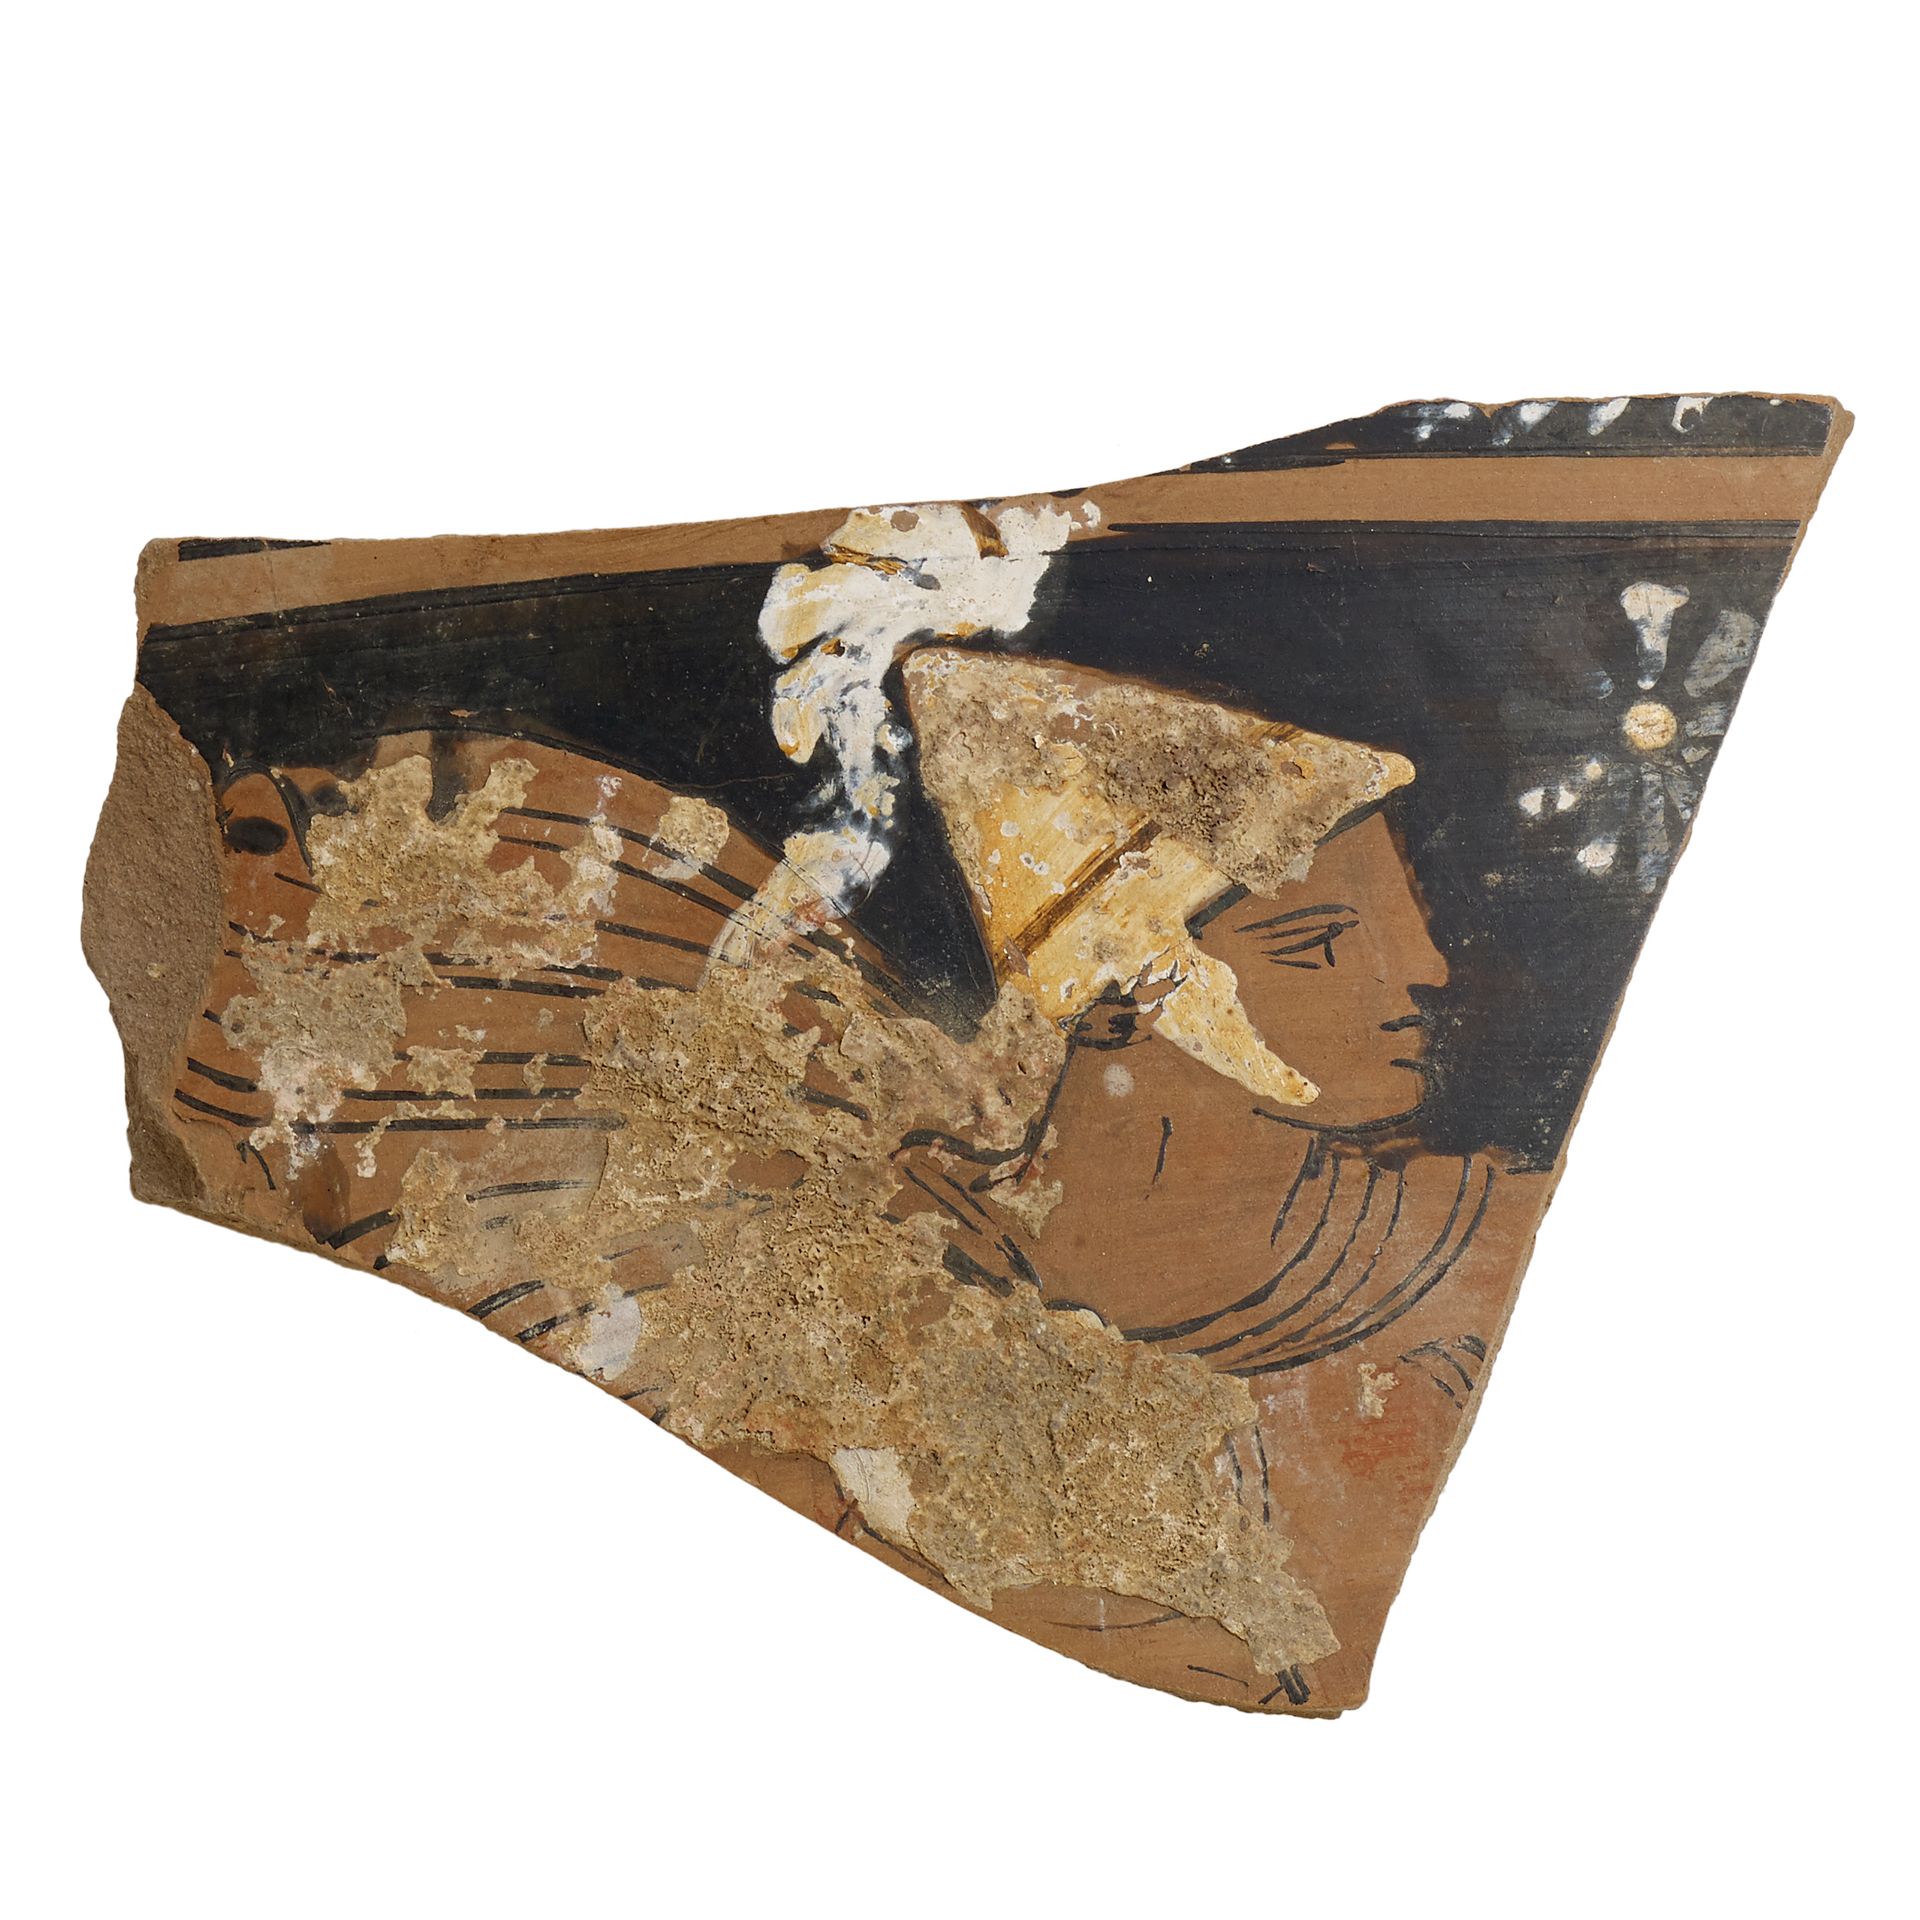 Null 阿普利亚碎片与红色人物

日期：公元前4世纪。C.

材料和技术：粉红色陶土，黑色涂料，白色和橙色以及paonazza罩染，在快速旋转的轮子上建模。
&hellip;